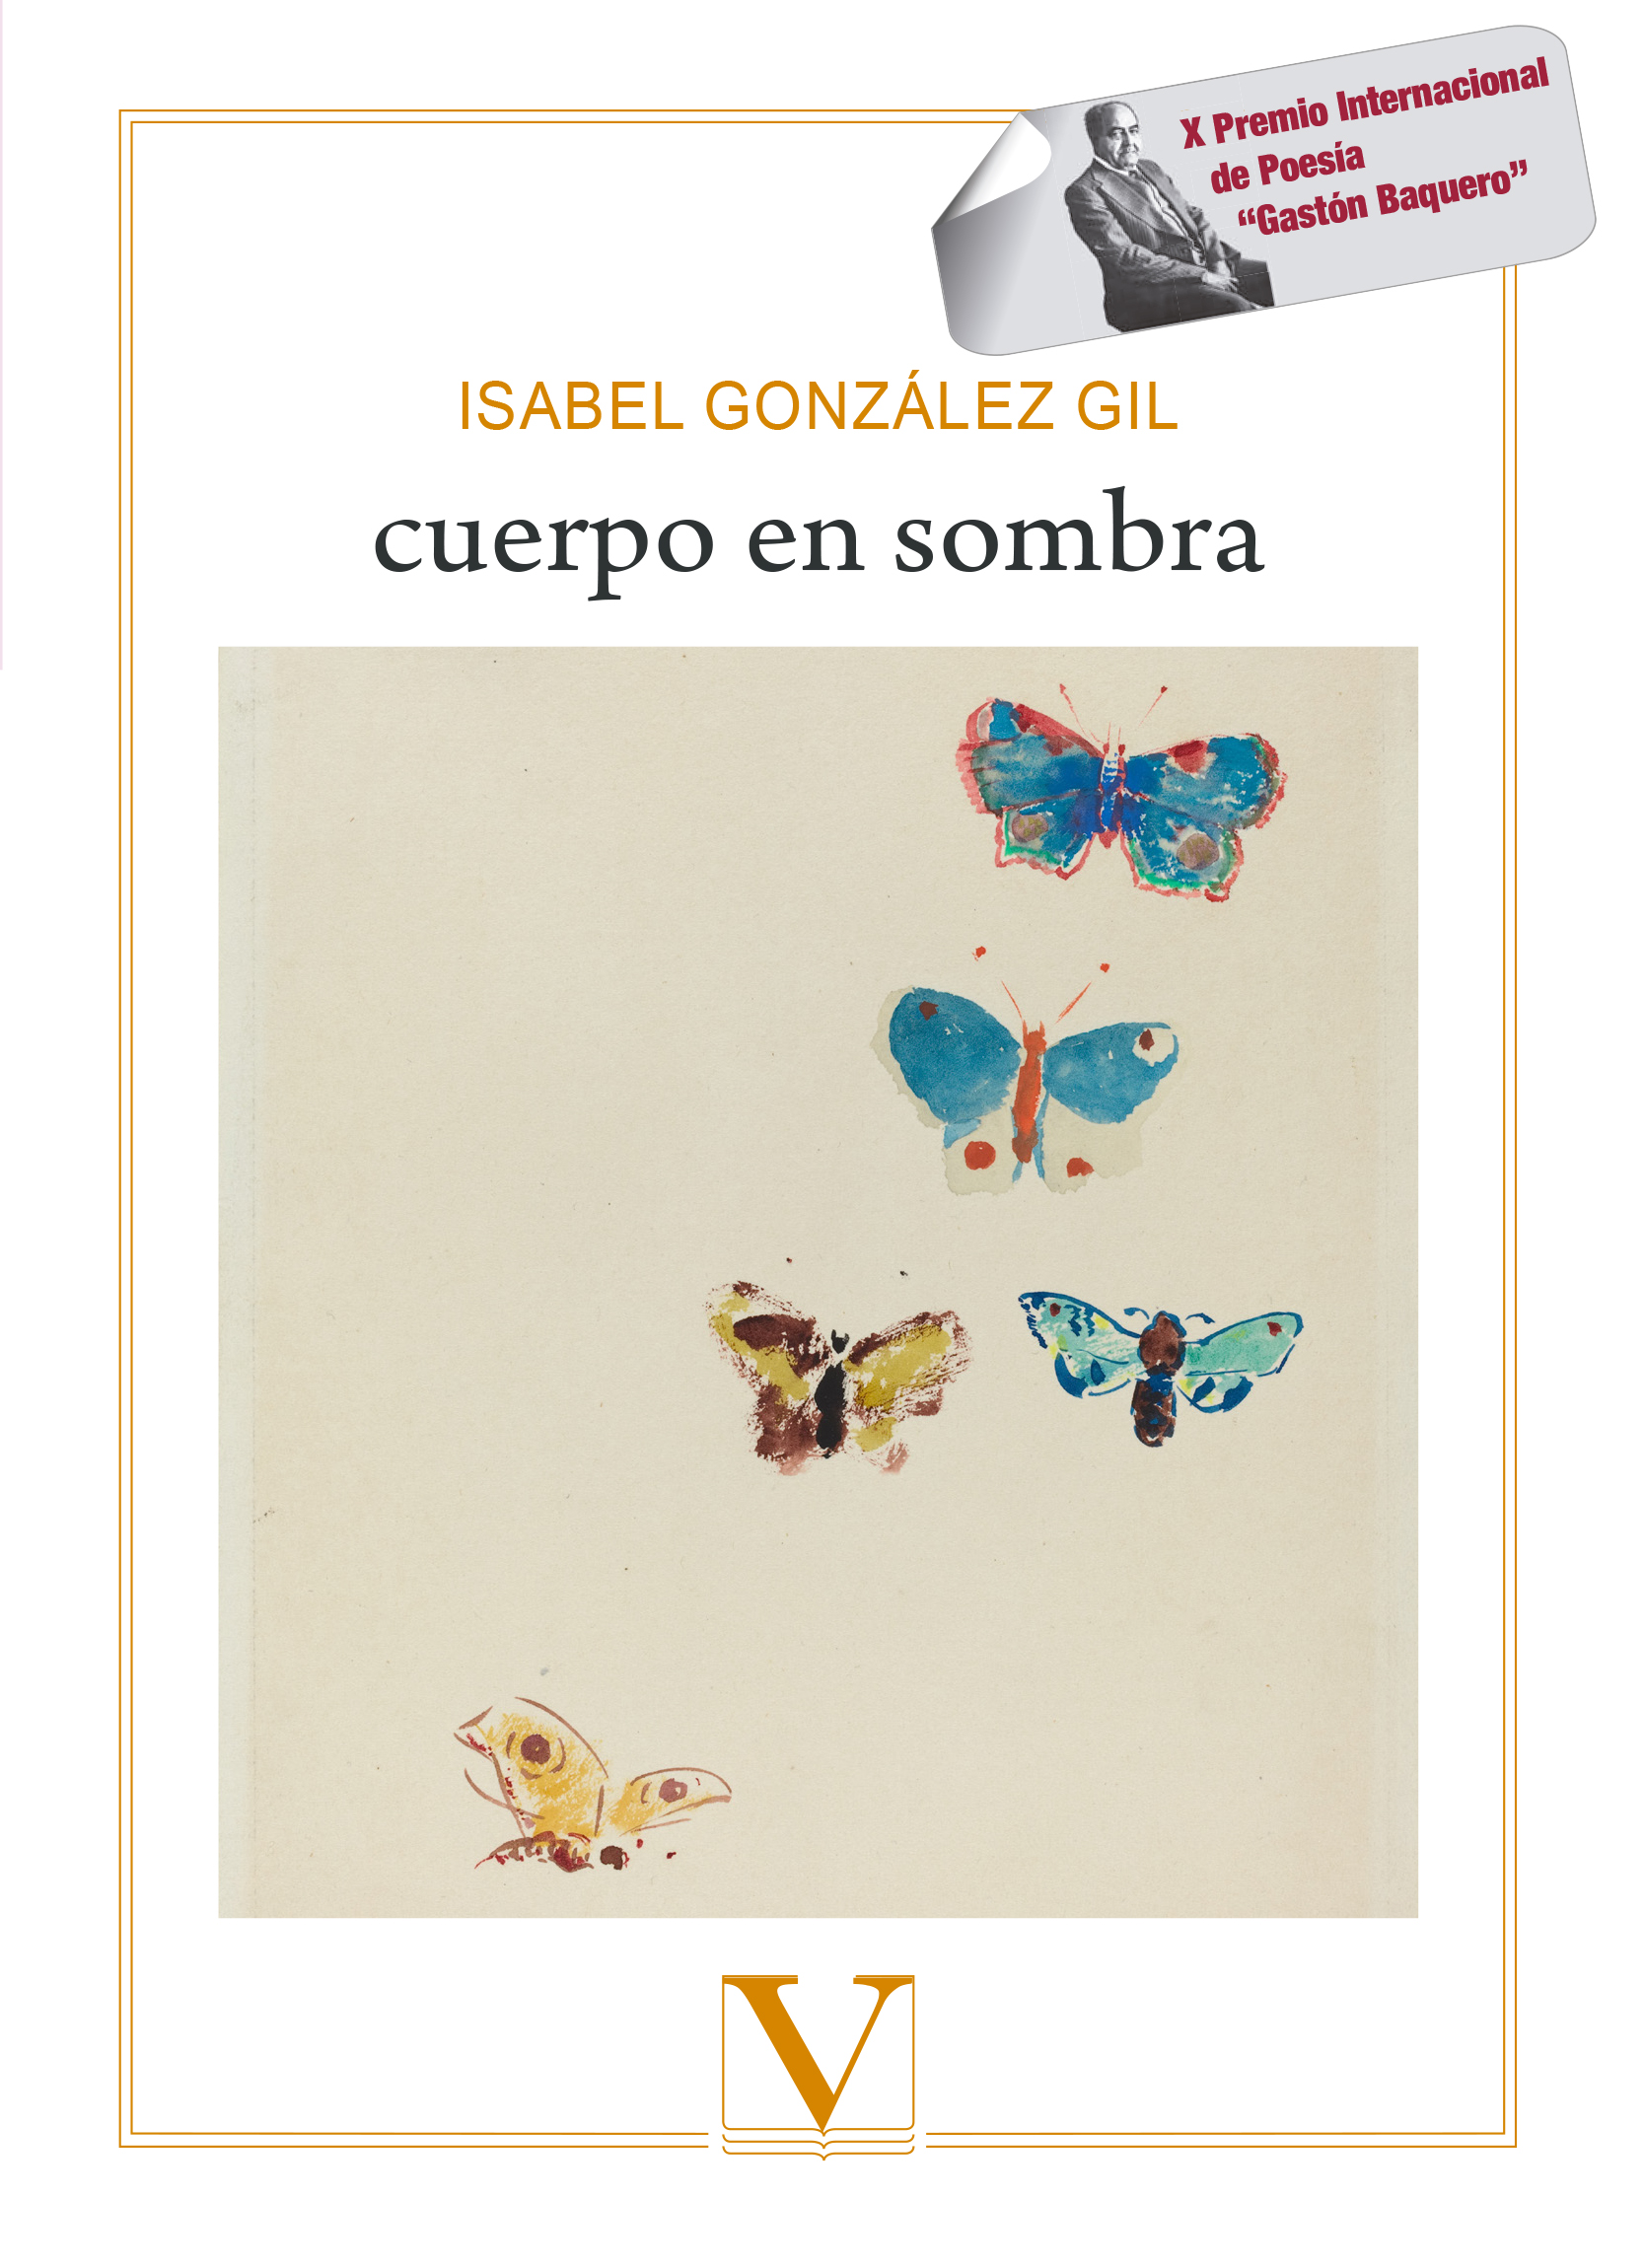 Un poemario hacia la luz: “cuerpo en sombra”, de Isabel González Gil